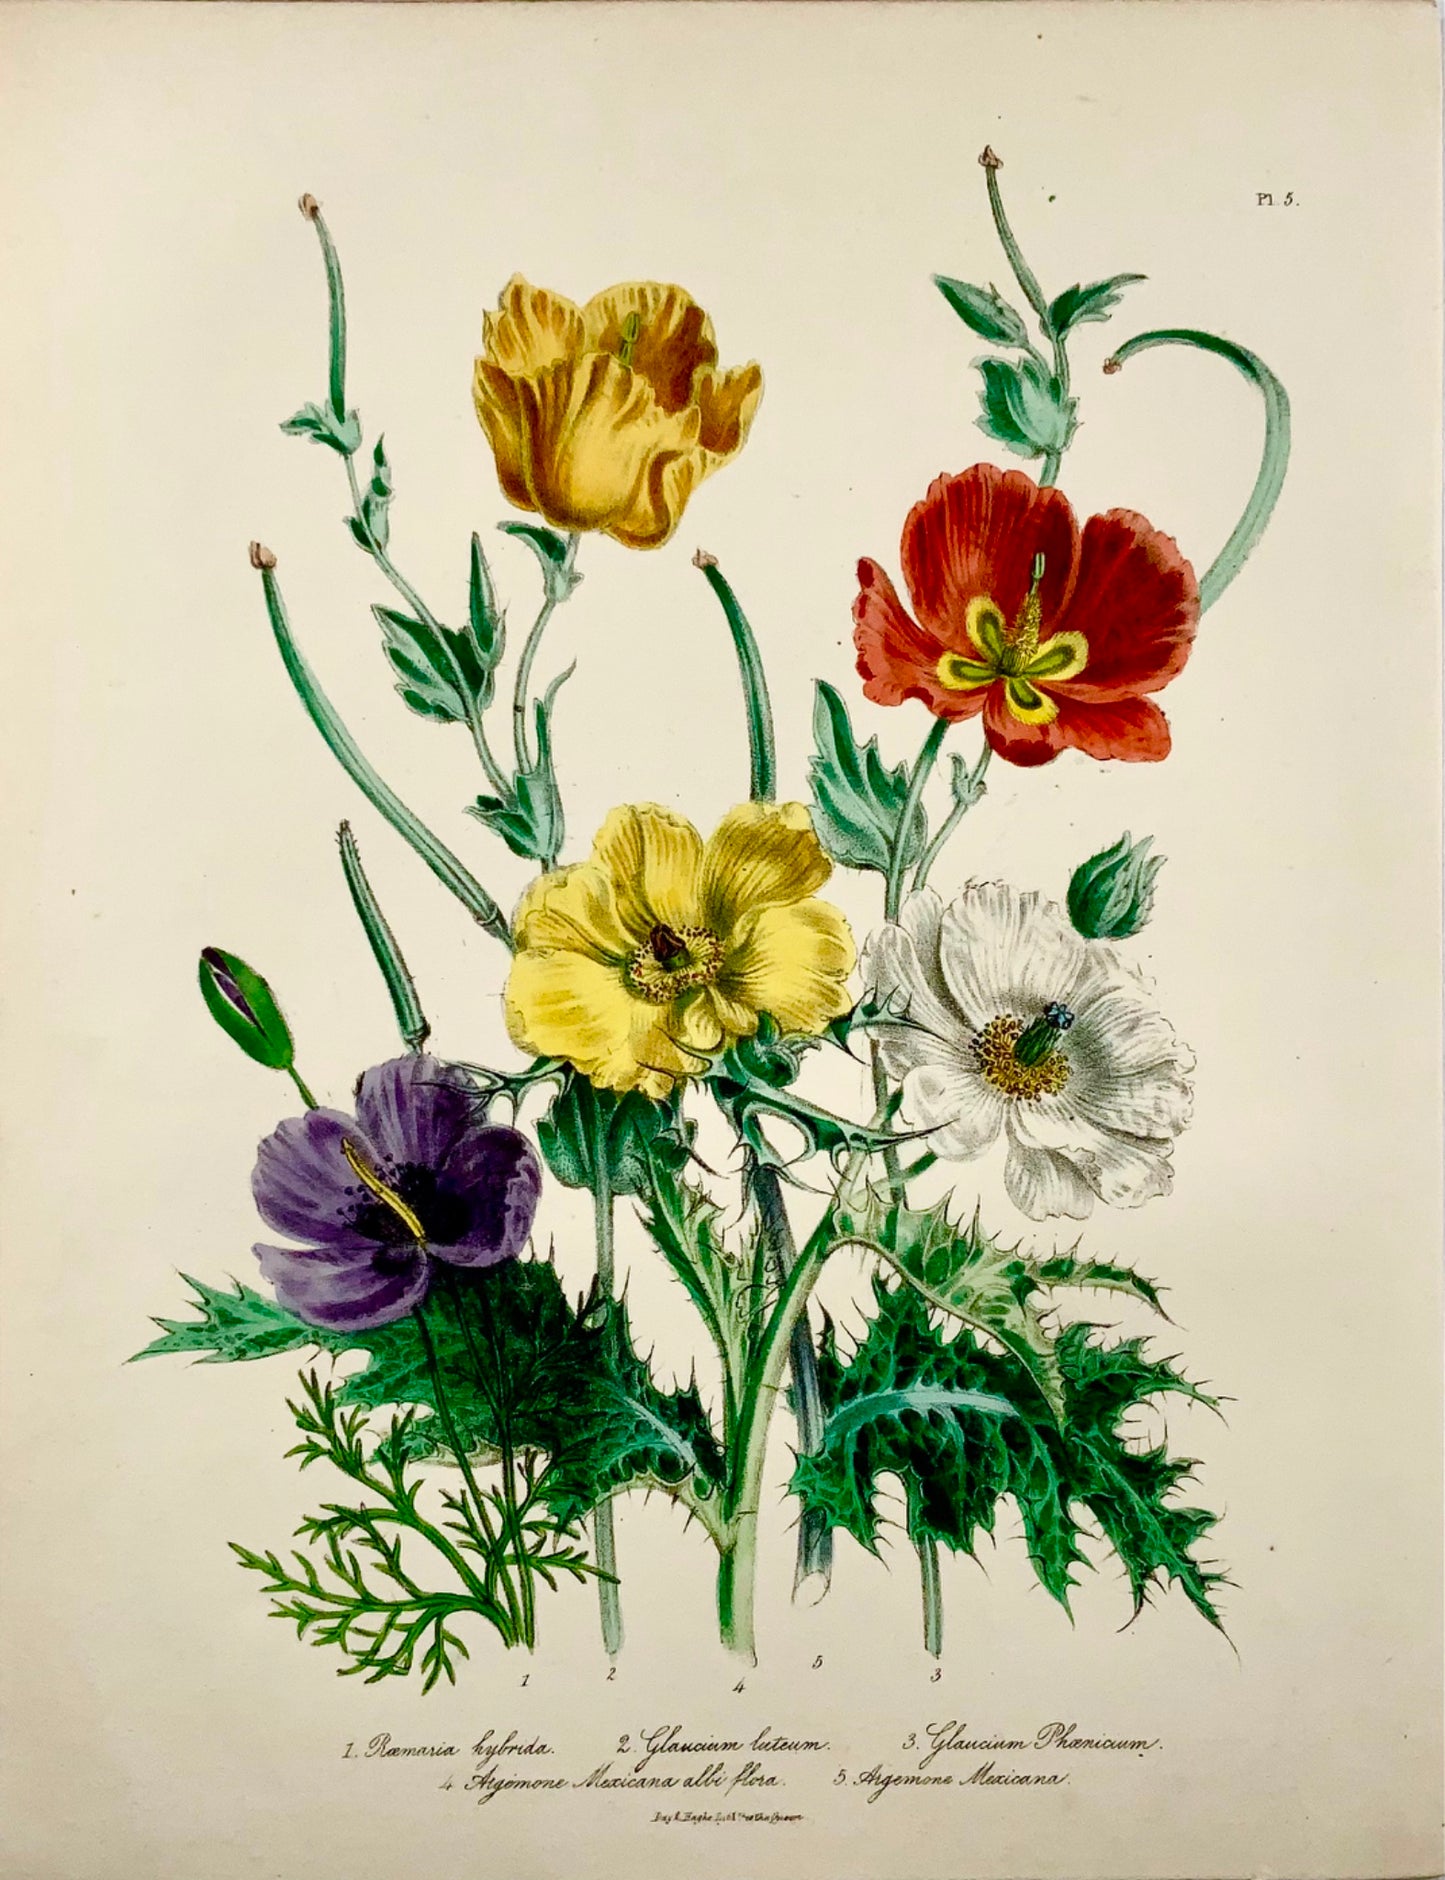 1841 Jane Loudon, Exotic Poppies, litografia colorata a mano, mazzo di fiori 